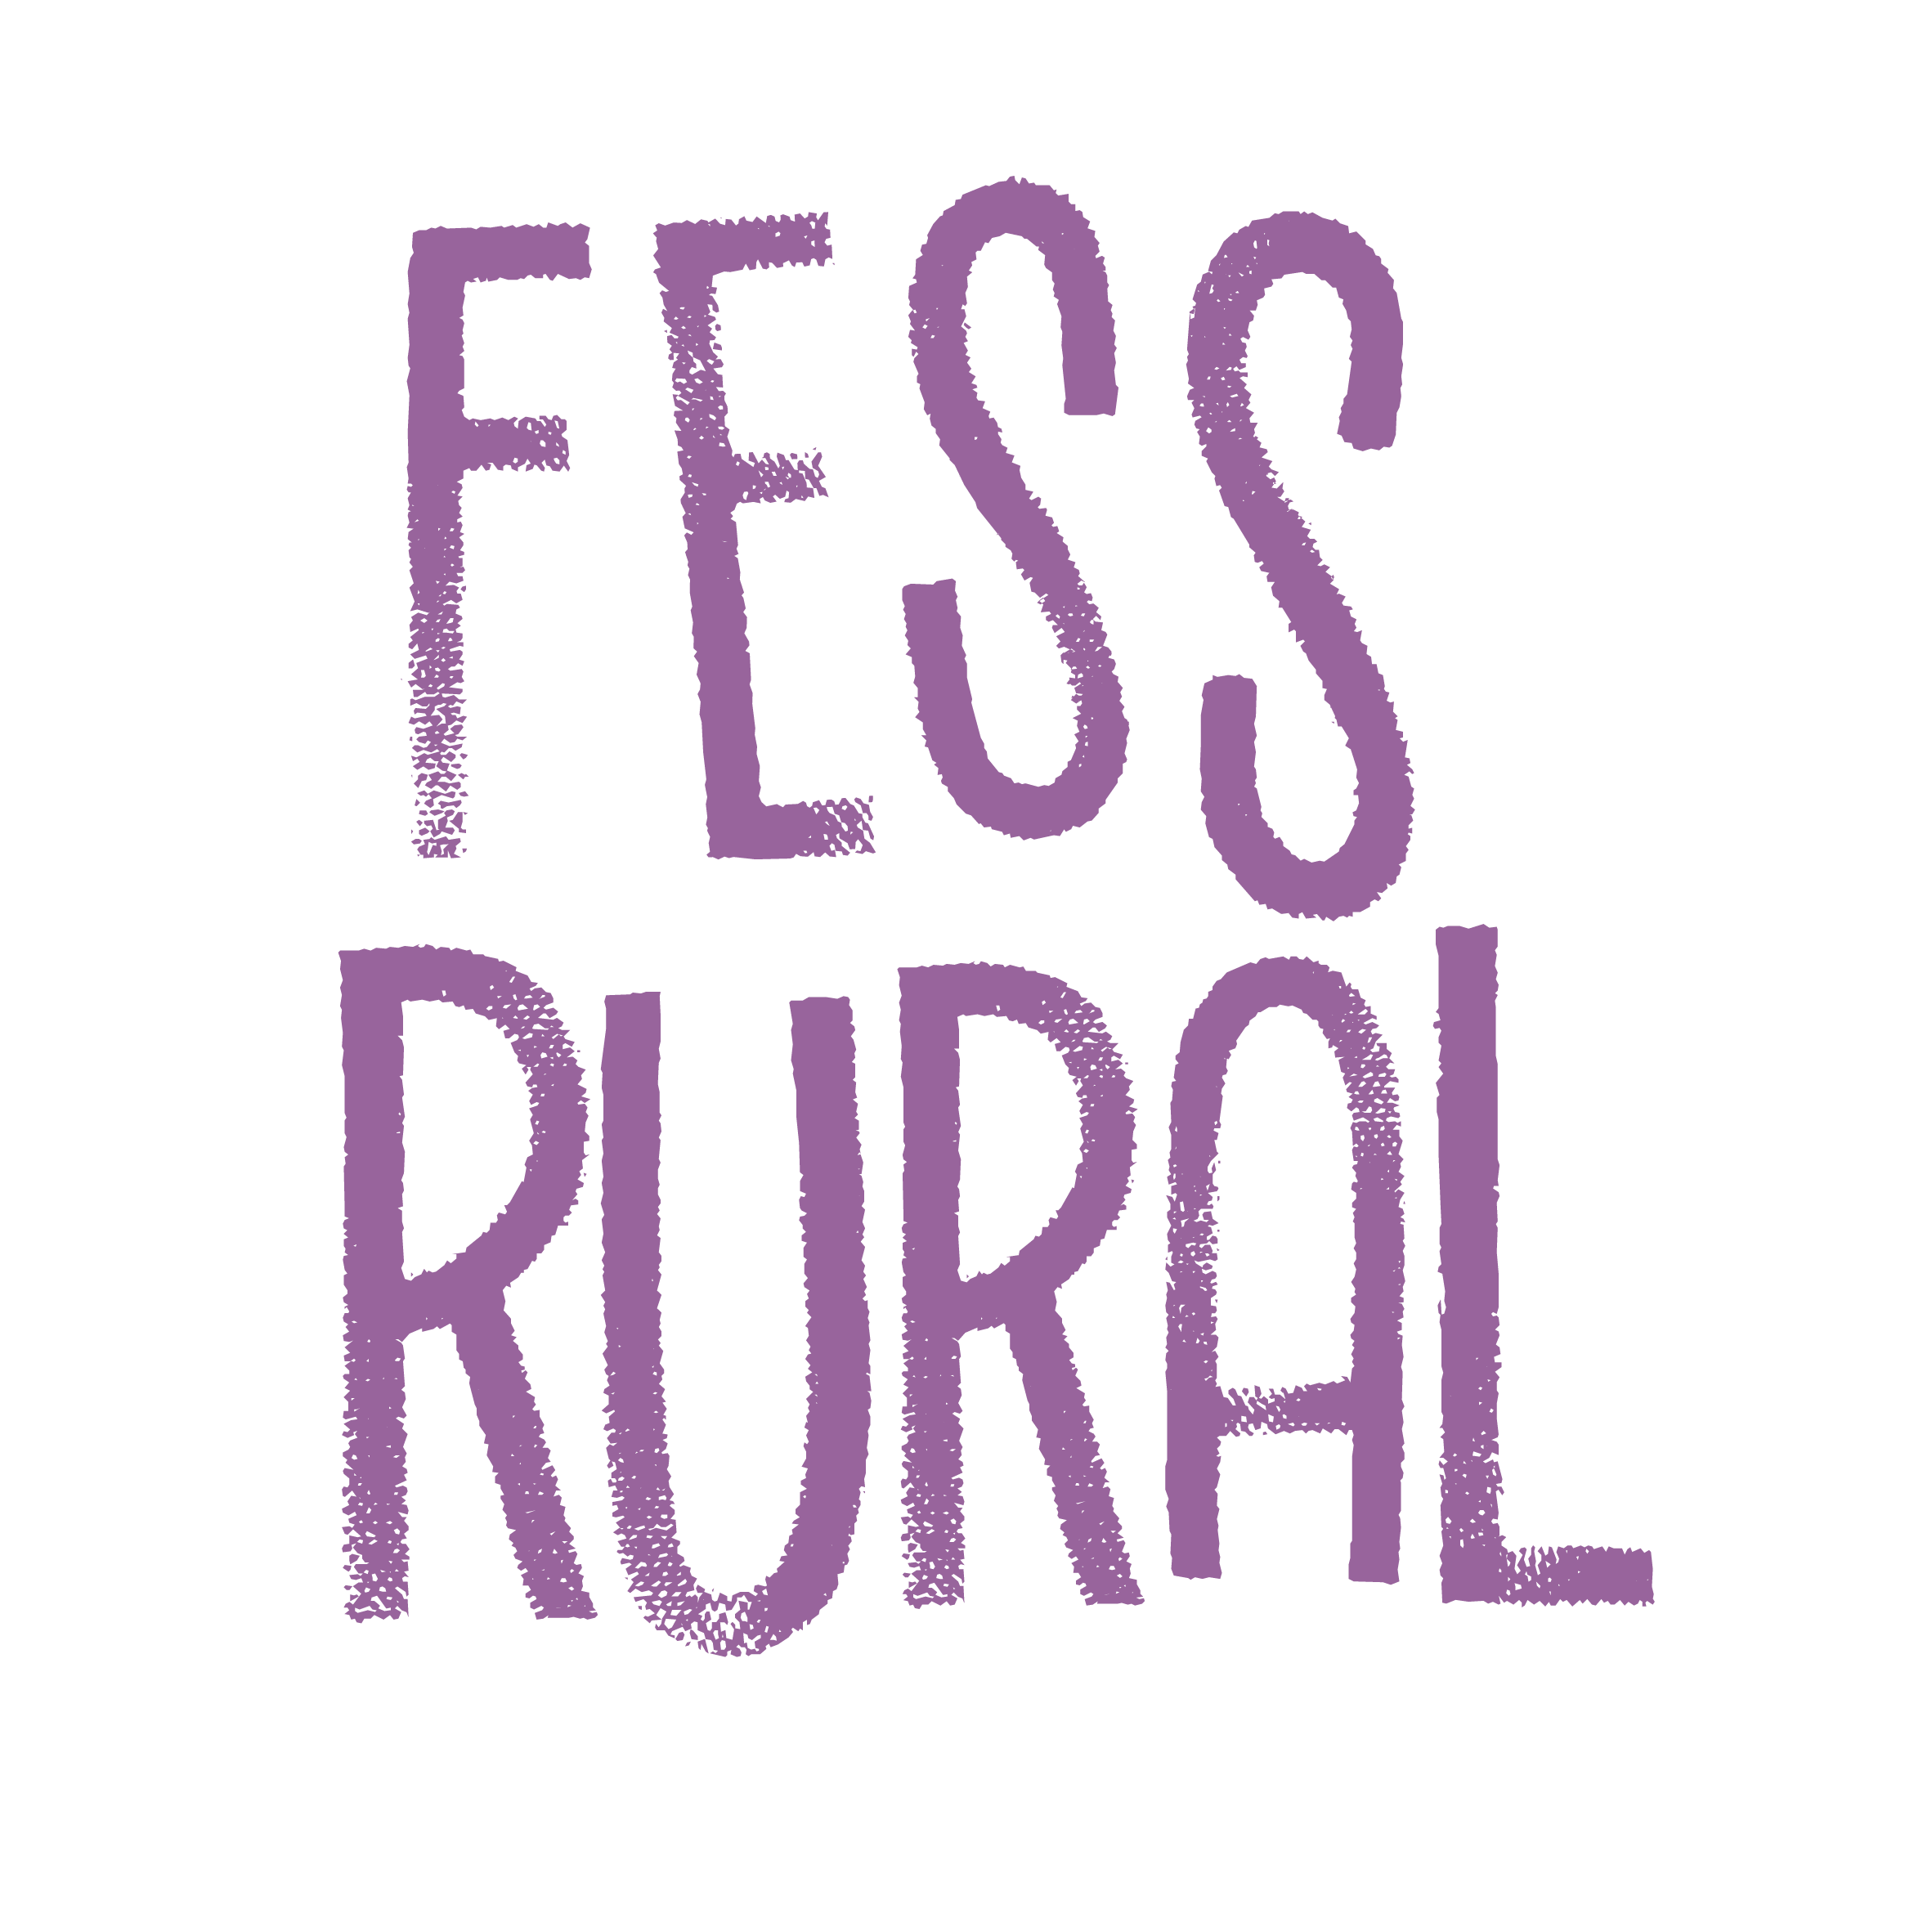 FESS rural